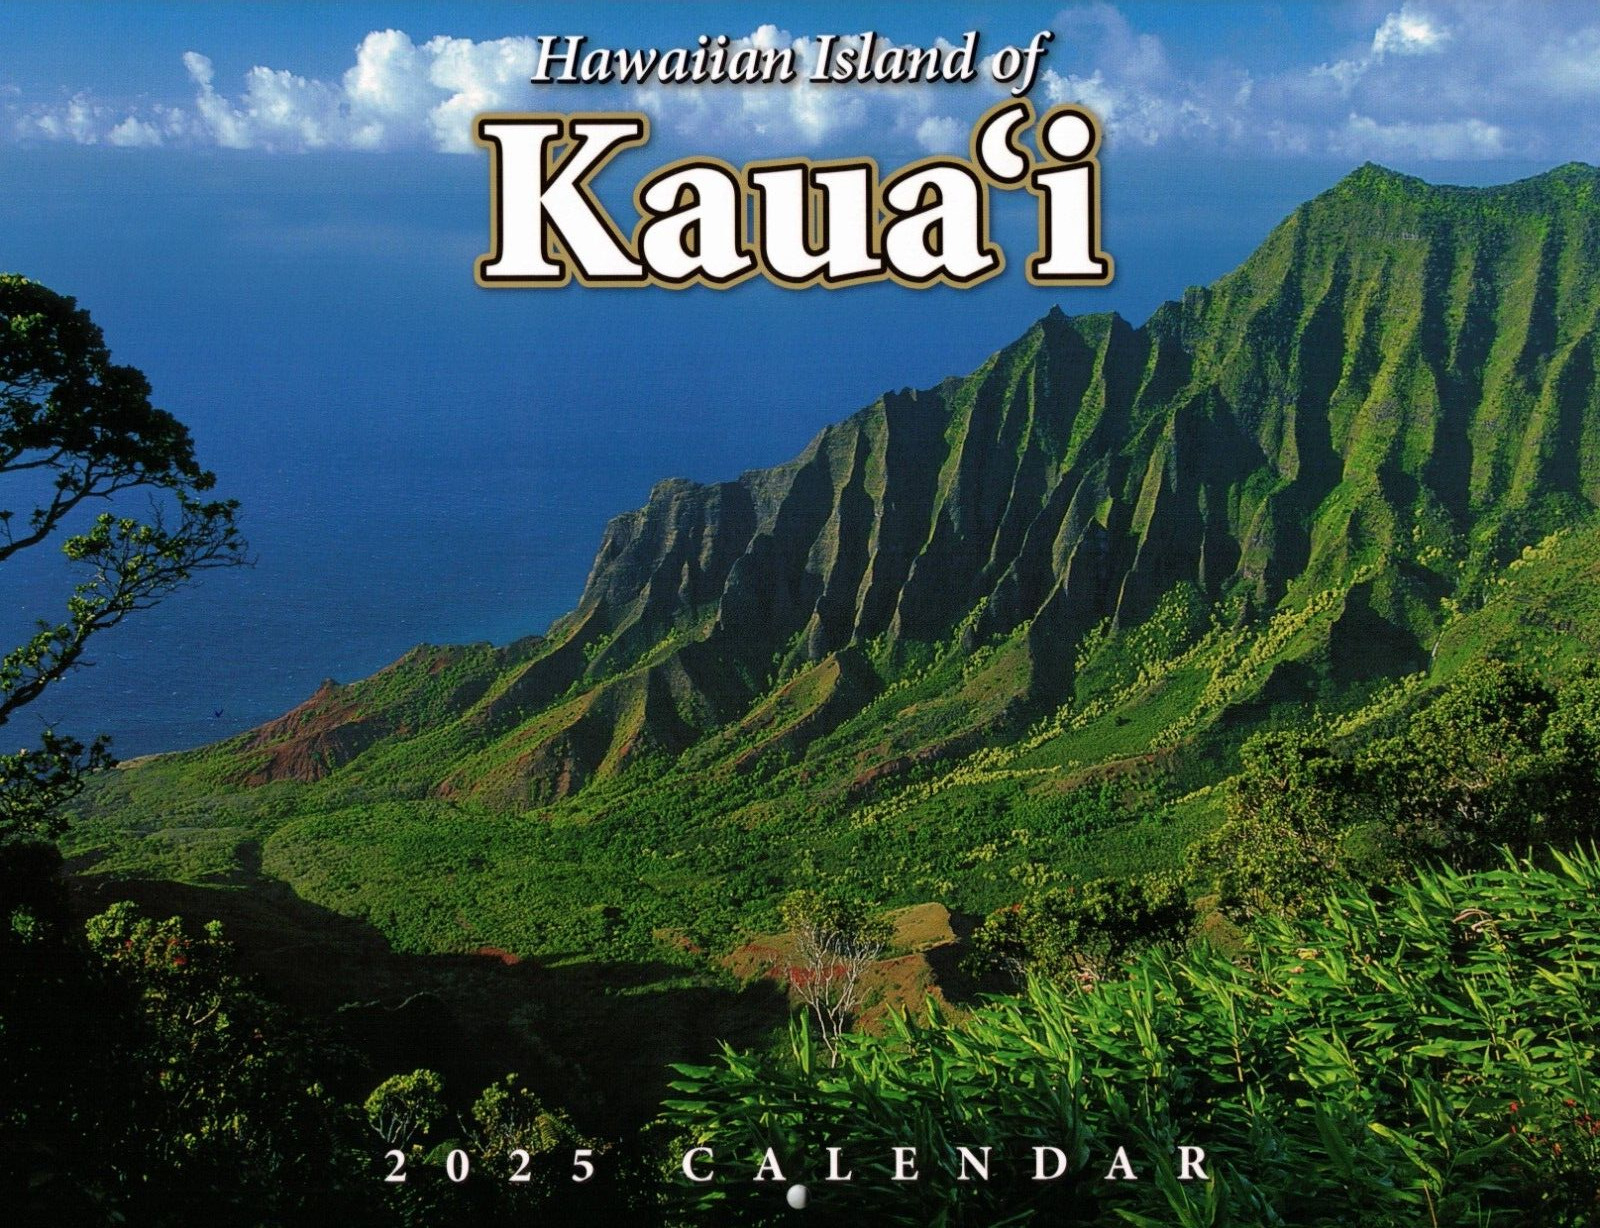 2025 CALENDAR - HAWAIIAN ISLAND OF KAUAI